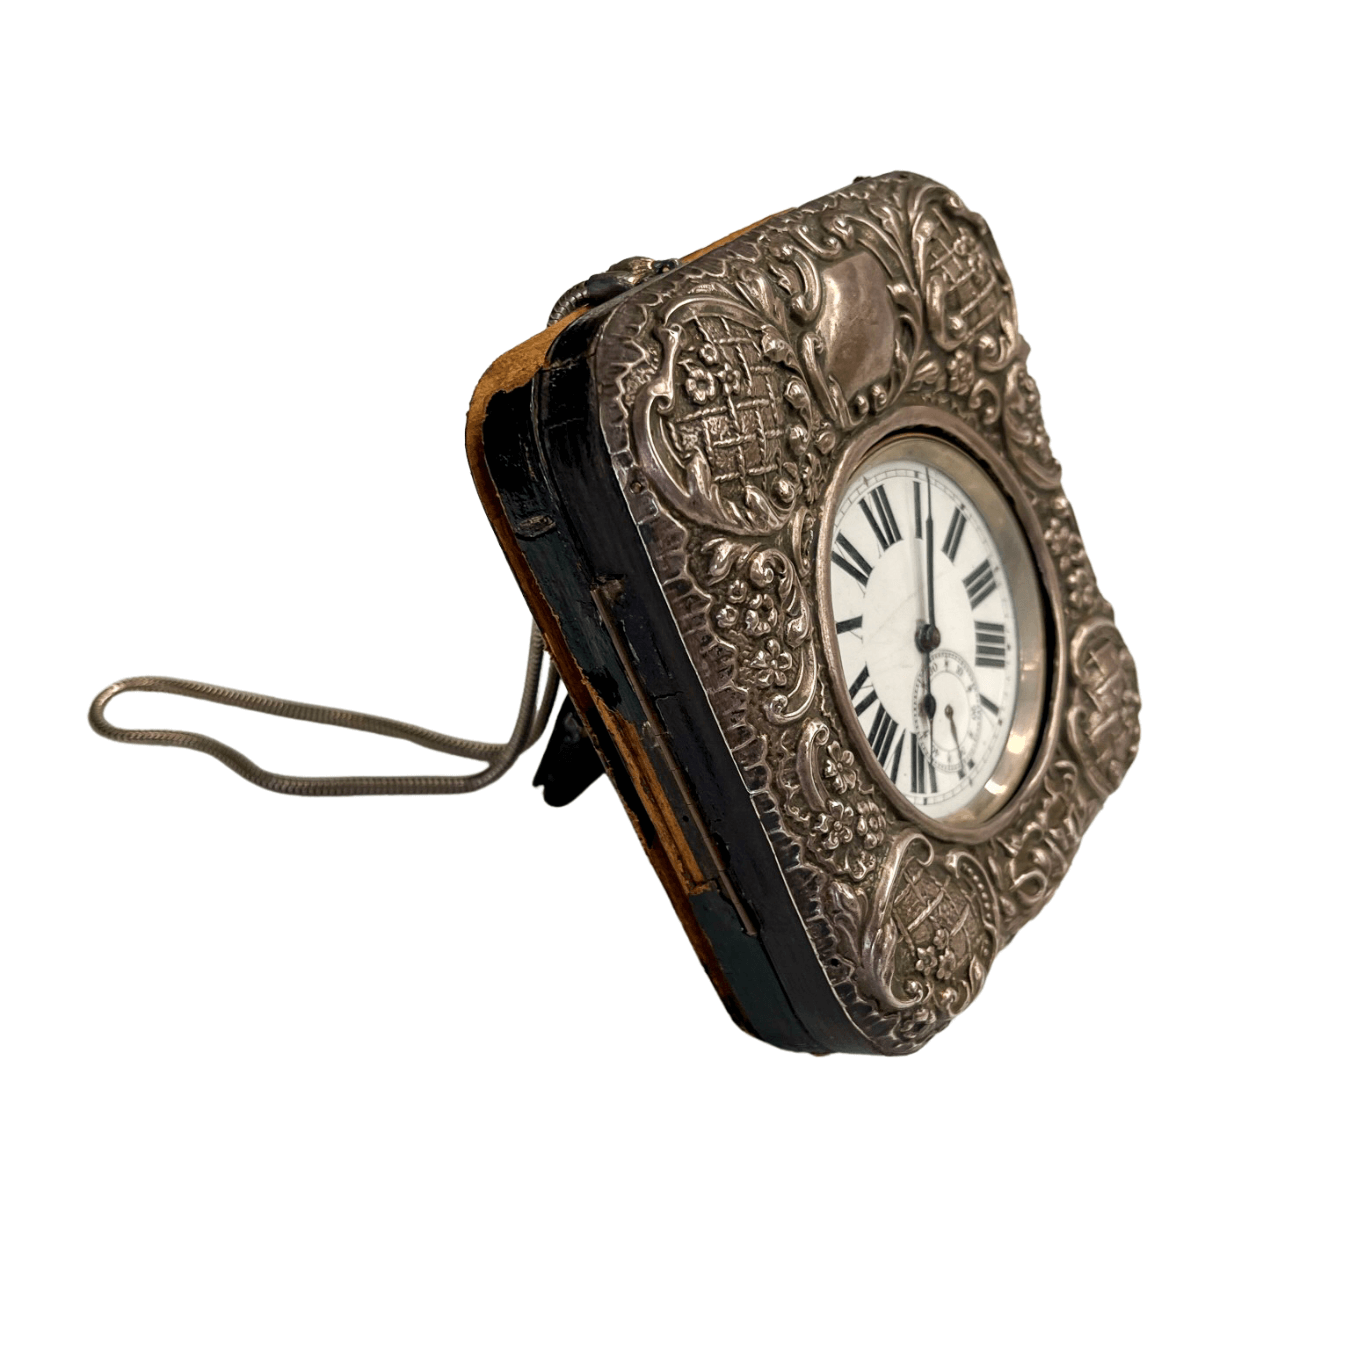 Relógio Antigo Argentan de 1891